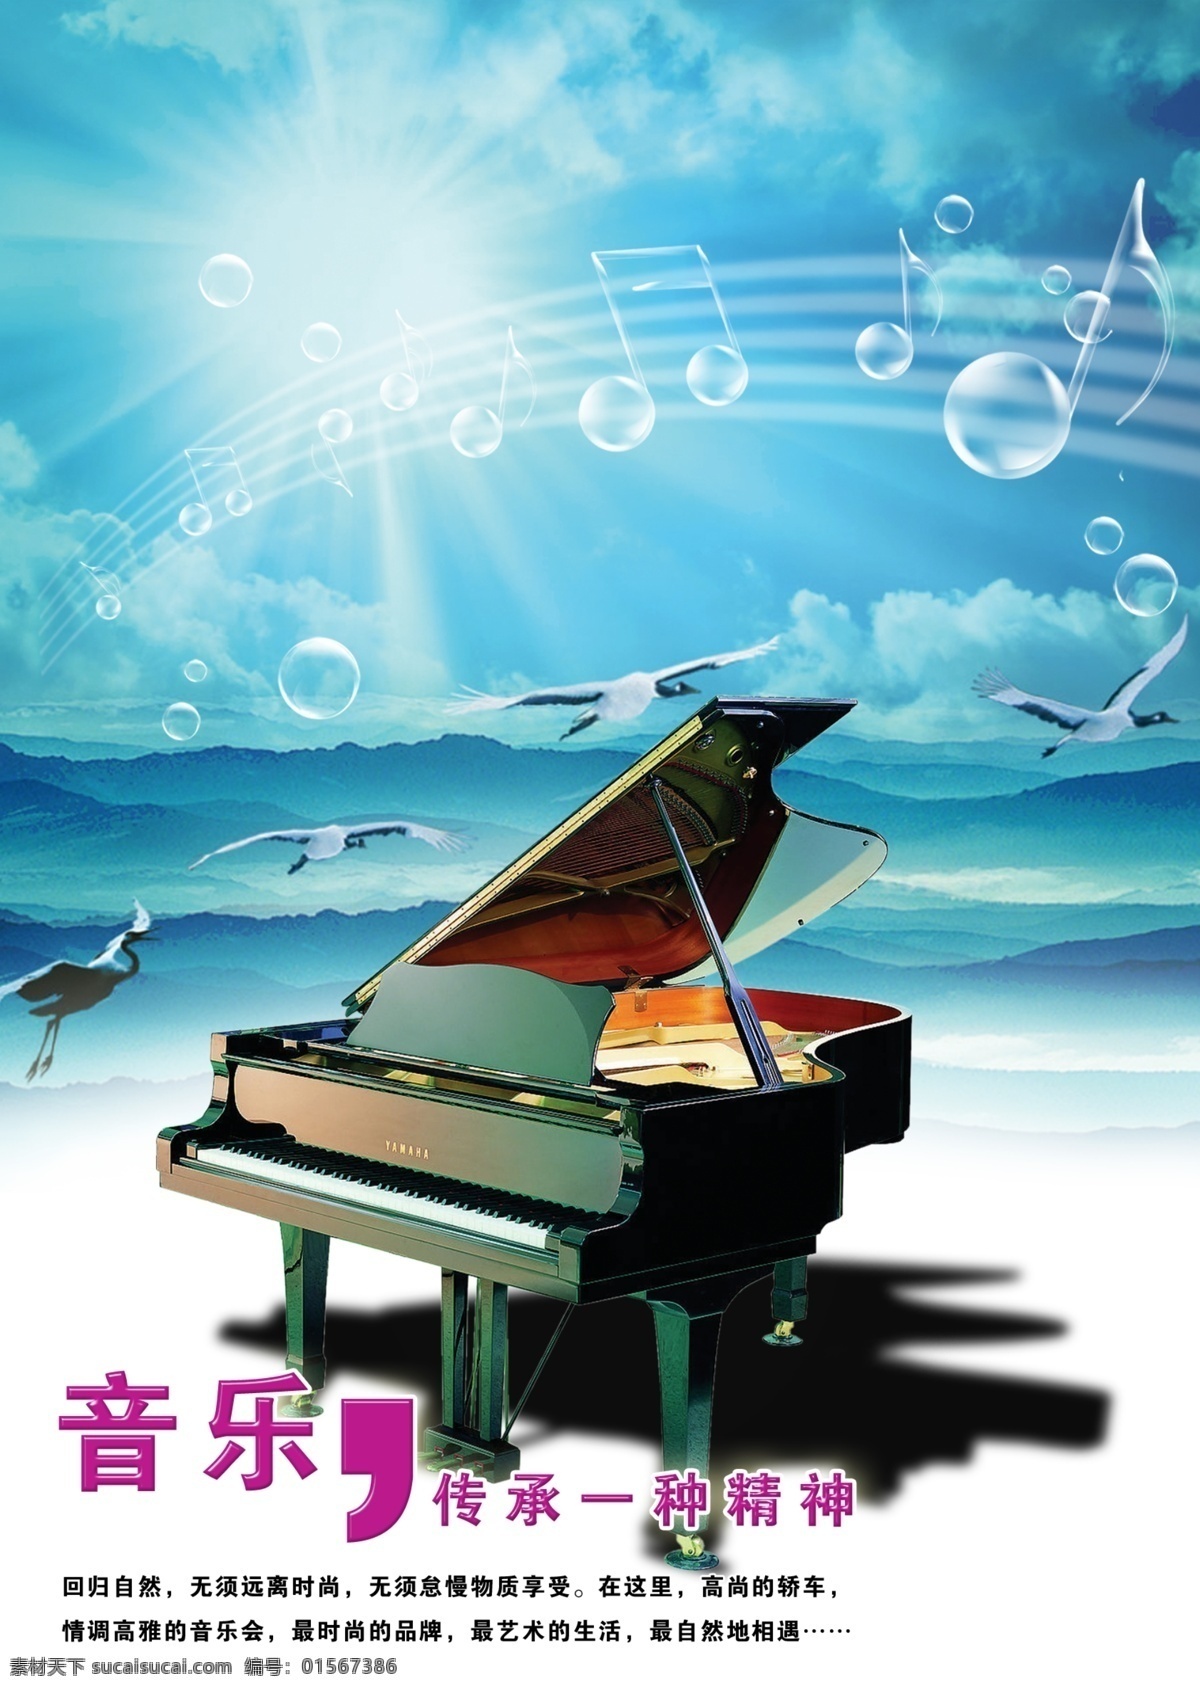 钢琴 折页 飞翔 广告设计模板 画册 画册设计 蓝天 透明 音符 钢琴折页 音乐 海报 源文件库 其他海报设计